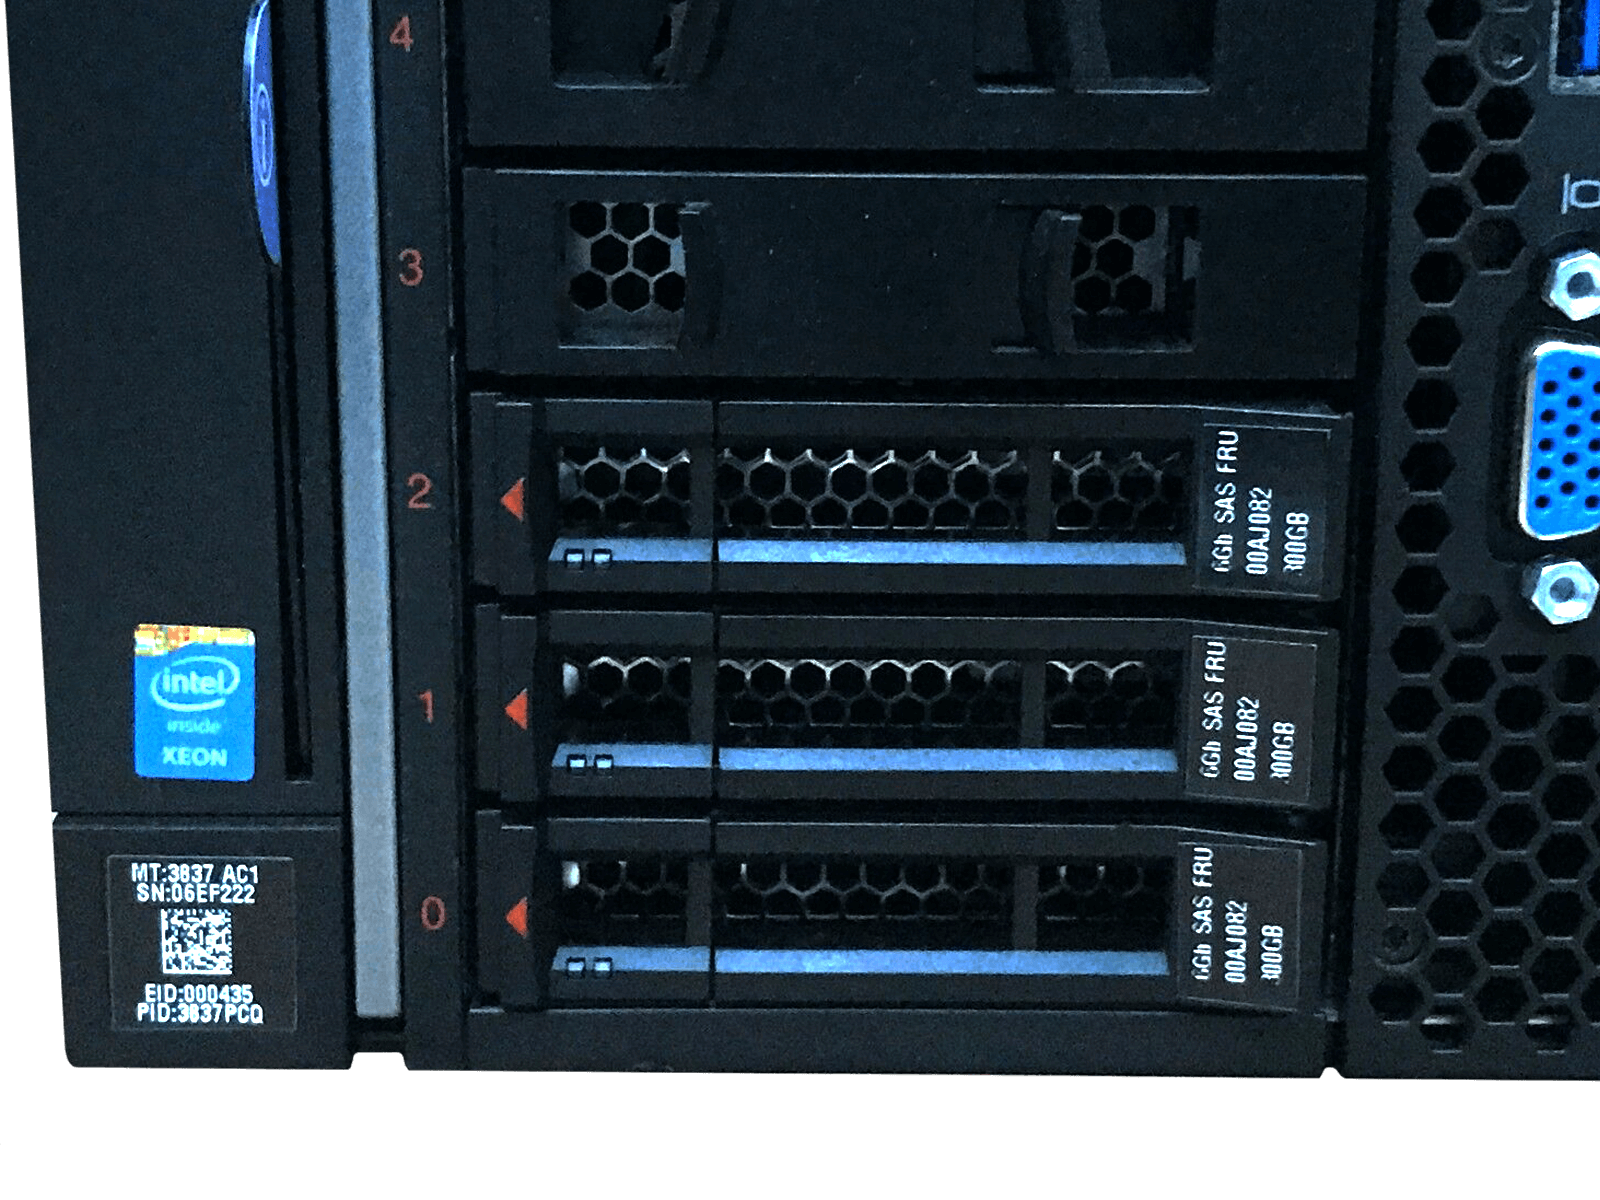 IBM x3850 X6 Server 4x Xeon E7-8893 v3 512GB DDR4 RAM 3x 300GB 15K 4x 1400W PSU